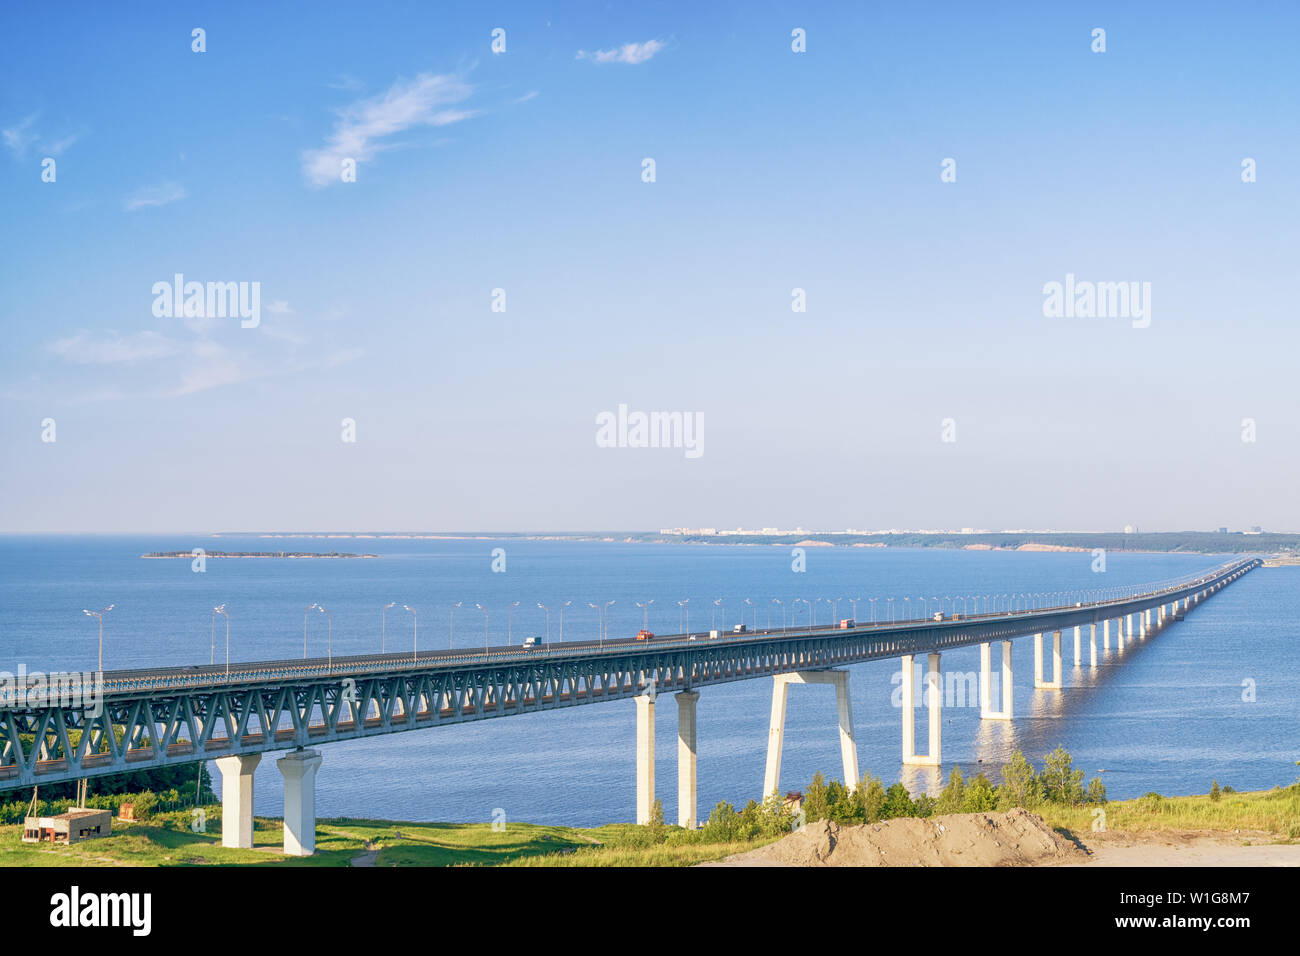 Sehr lange 'Präsident' Brücke über die Wolga in Perm, Russland. Helle Landschaft an einem sonnigen Tag Stockfoto